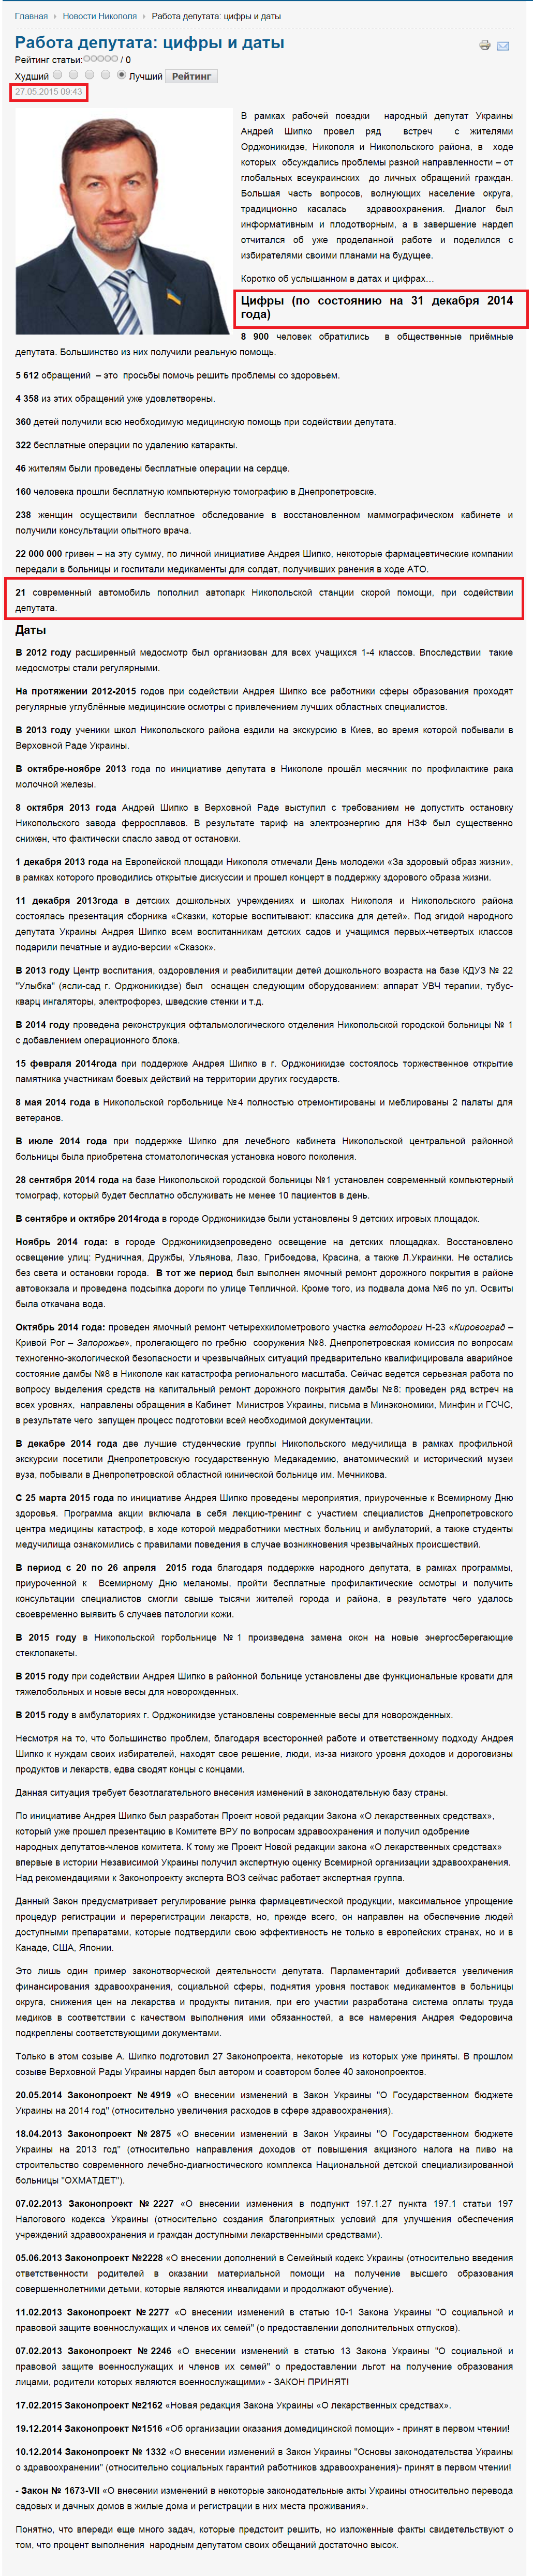 http://ntm.net.ua/2011-01-21-12-49-16/7037-rabota-deputata-cifry-i-daty